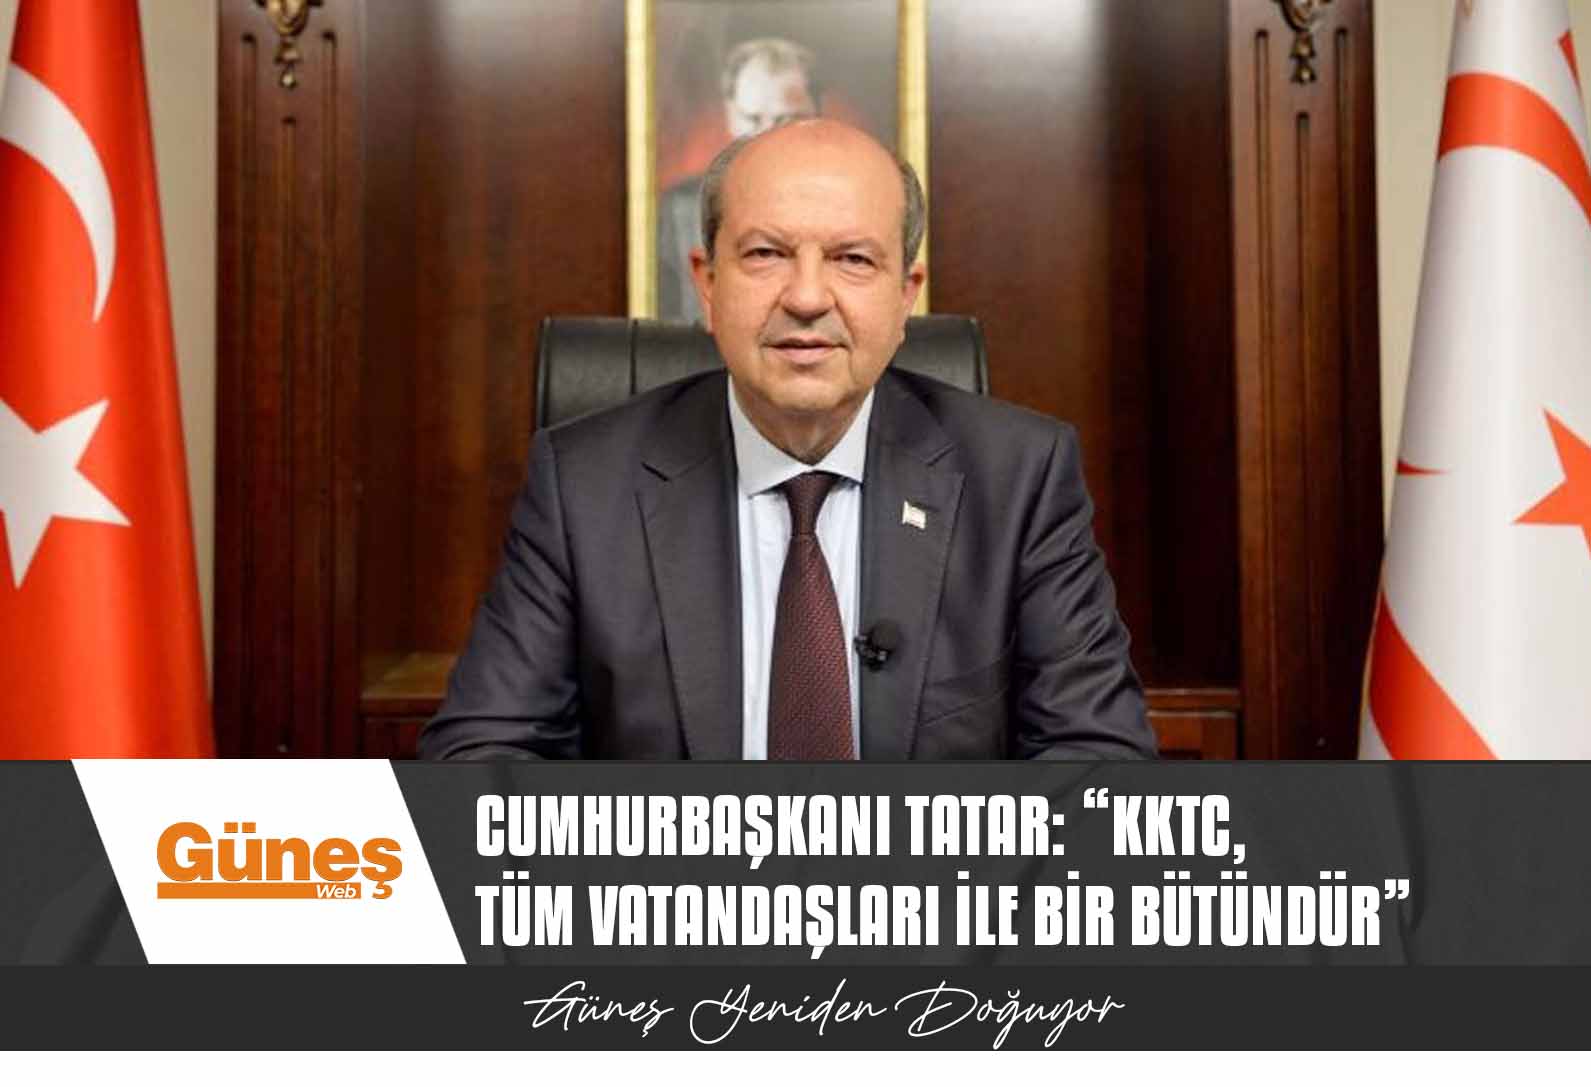 Cumhurbaşkanı Tatar: “KKTC, tüm vatandaşları ile bir bütündür”